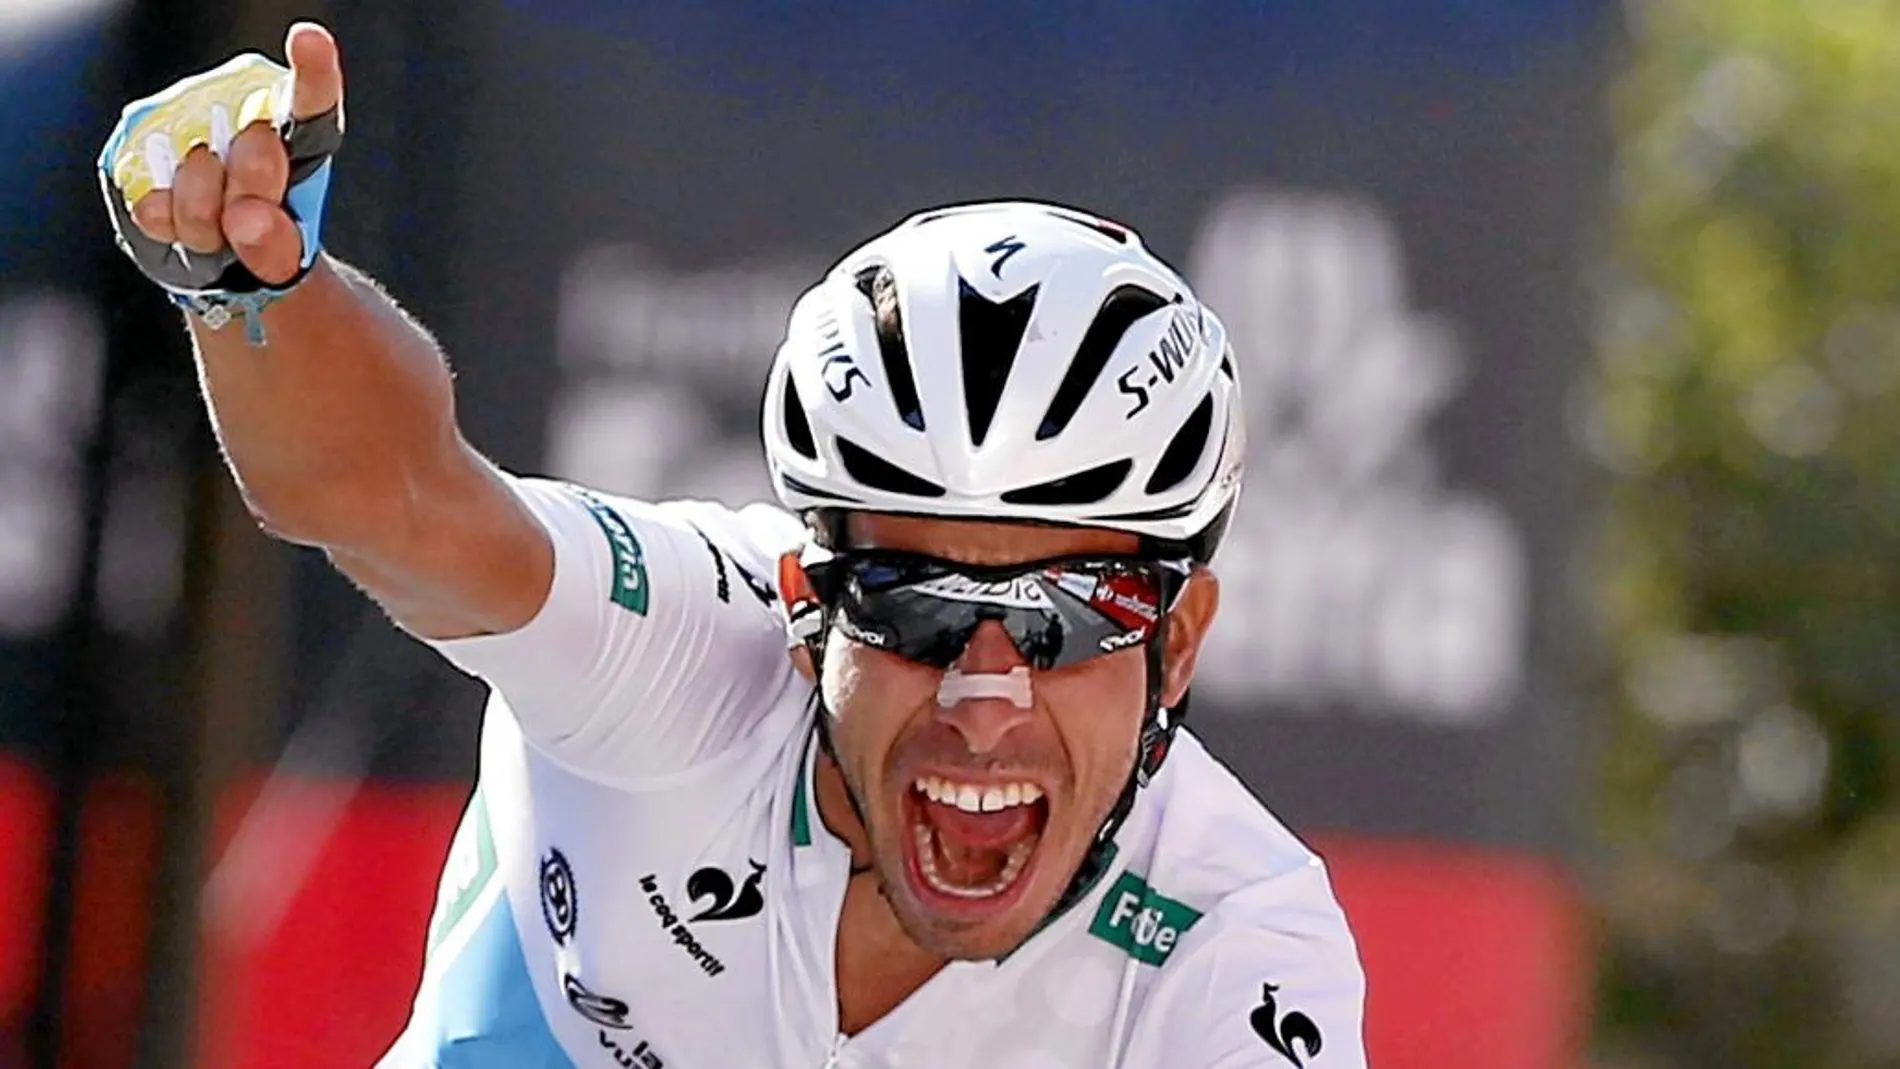 EL GANADOR. Fabio Aru celebra su victoria en la Vuelta al cruzar la meta en Cercedilla